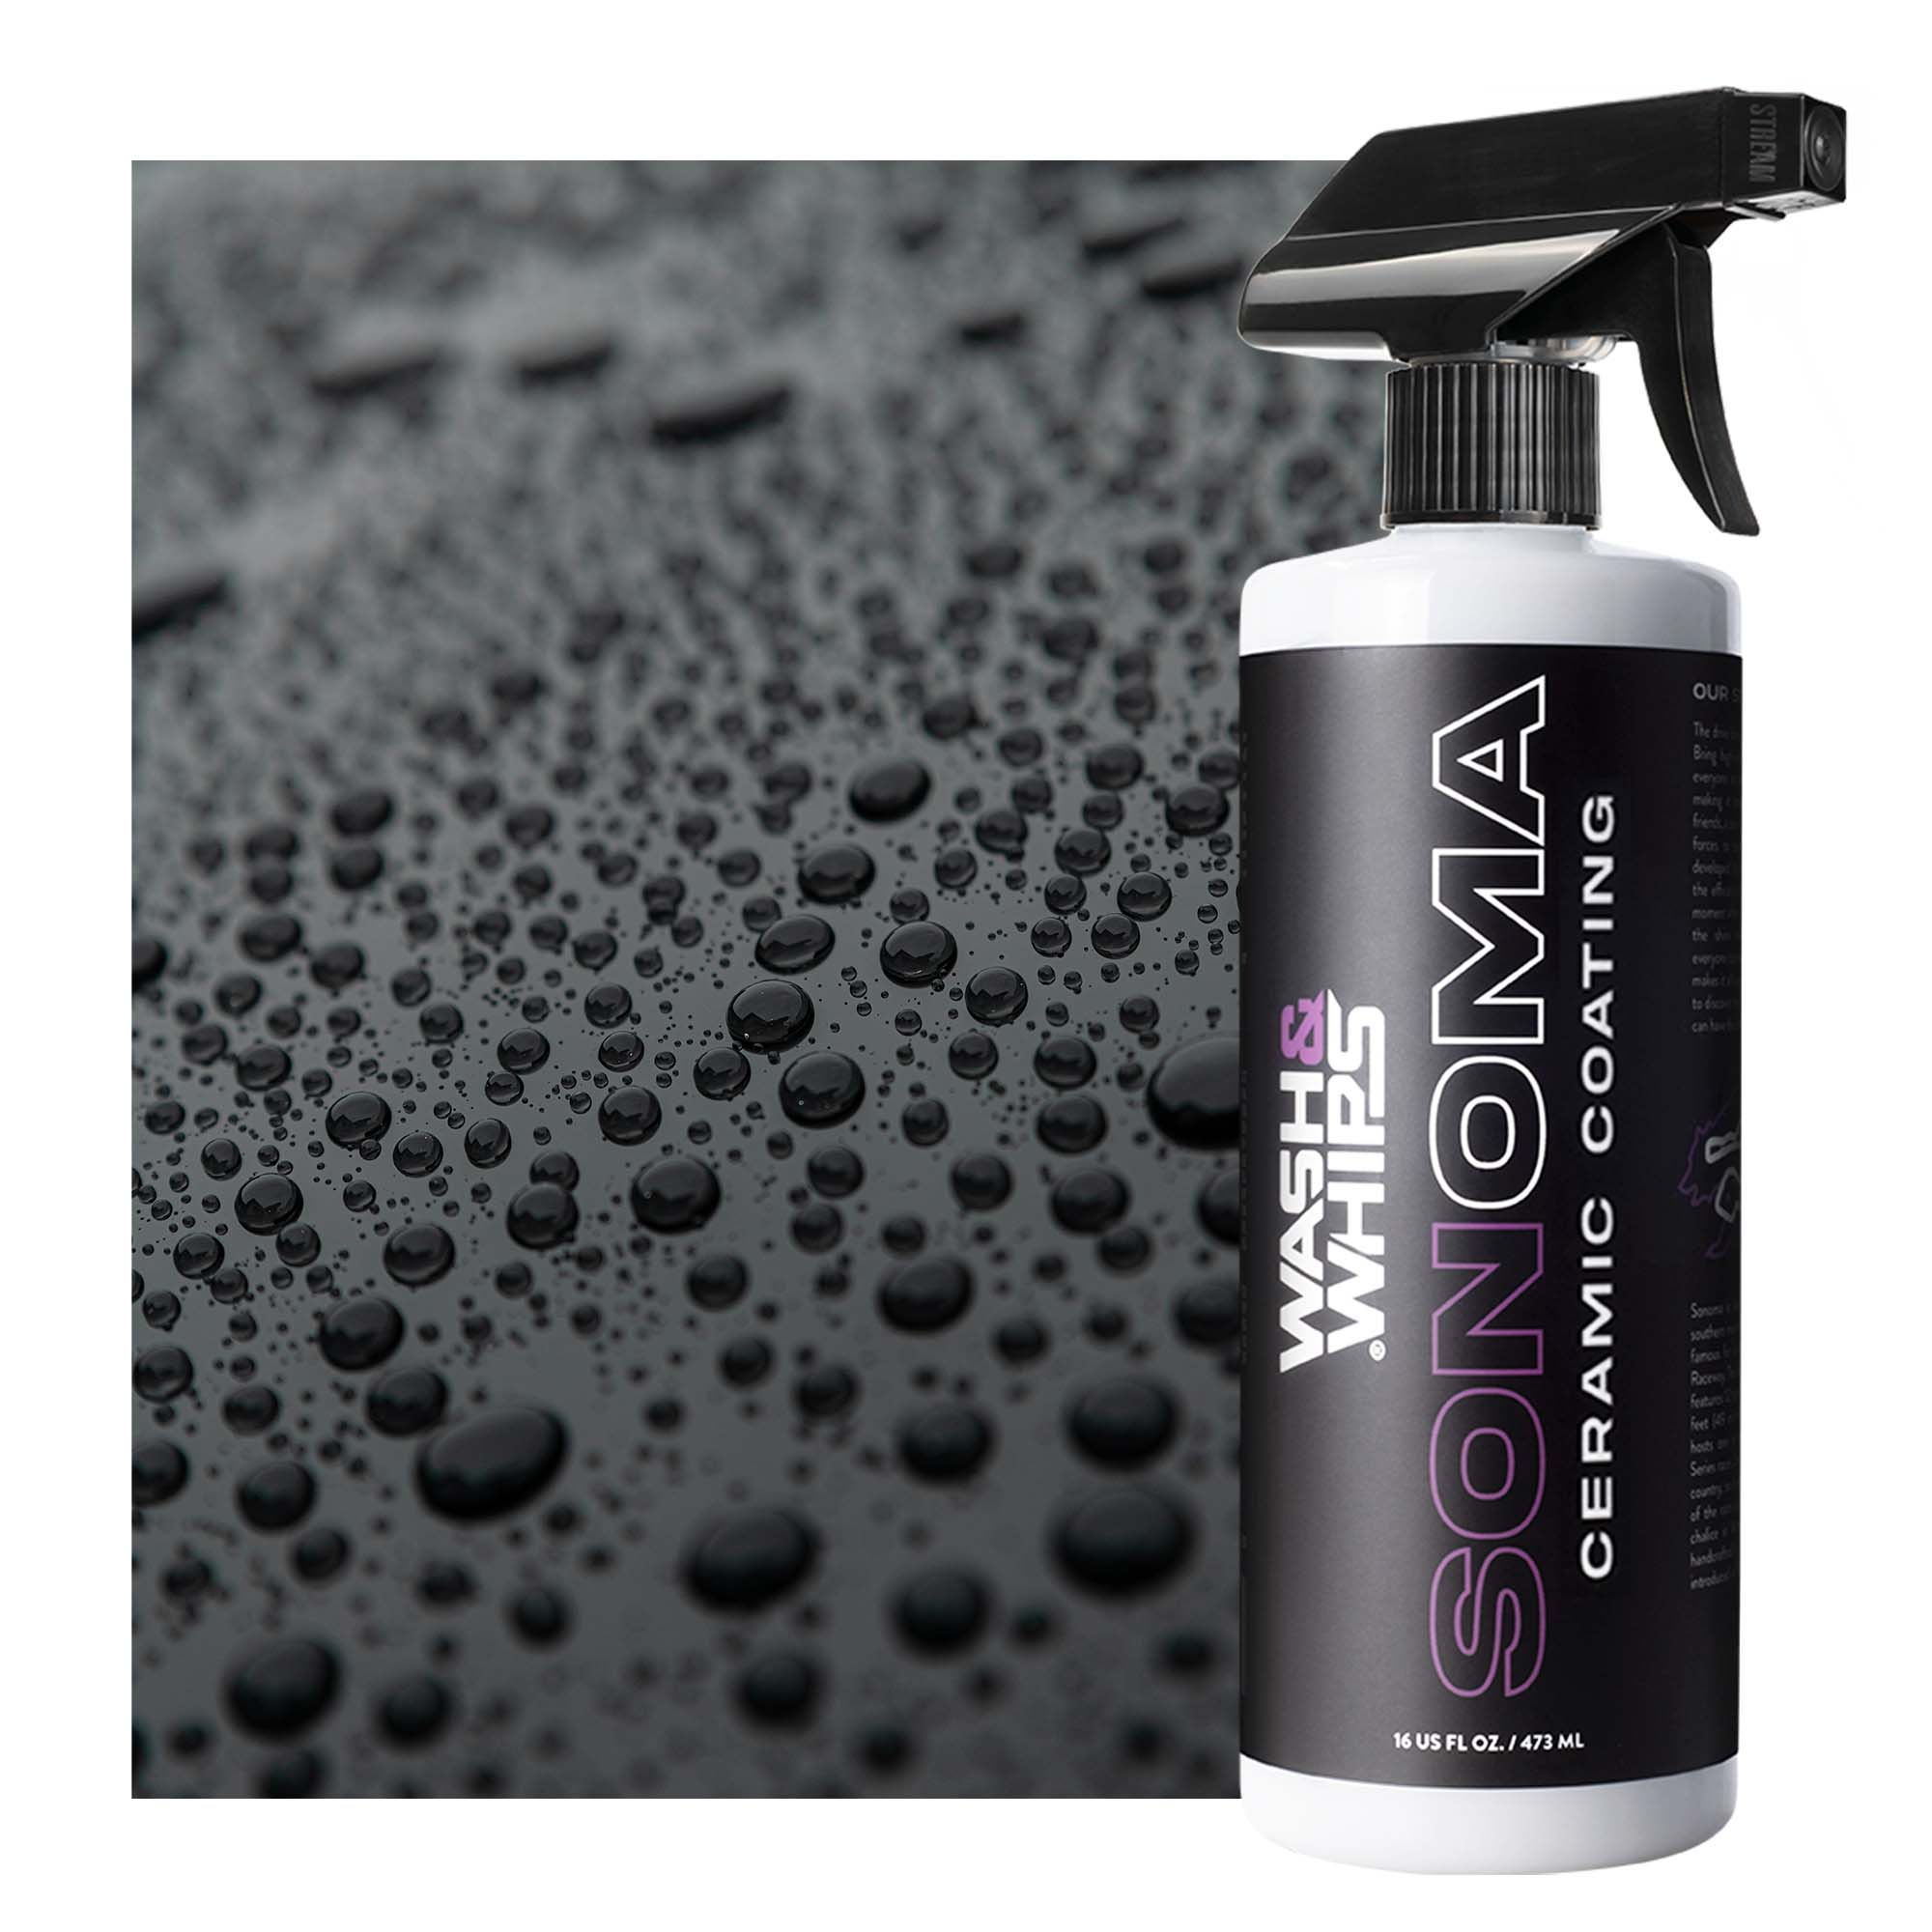 Sonoma Ceramic Coating Spray - 9H